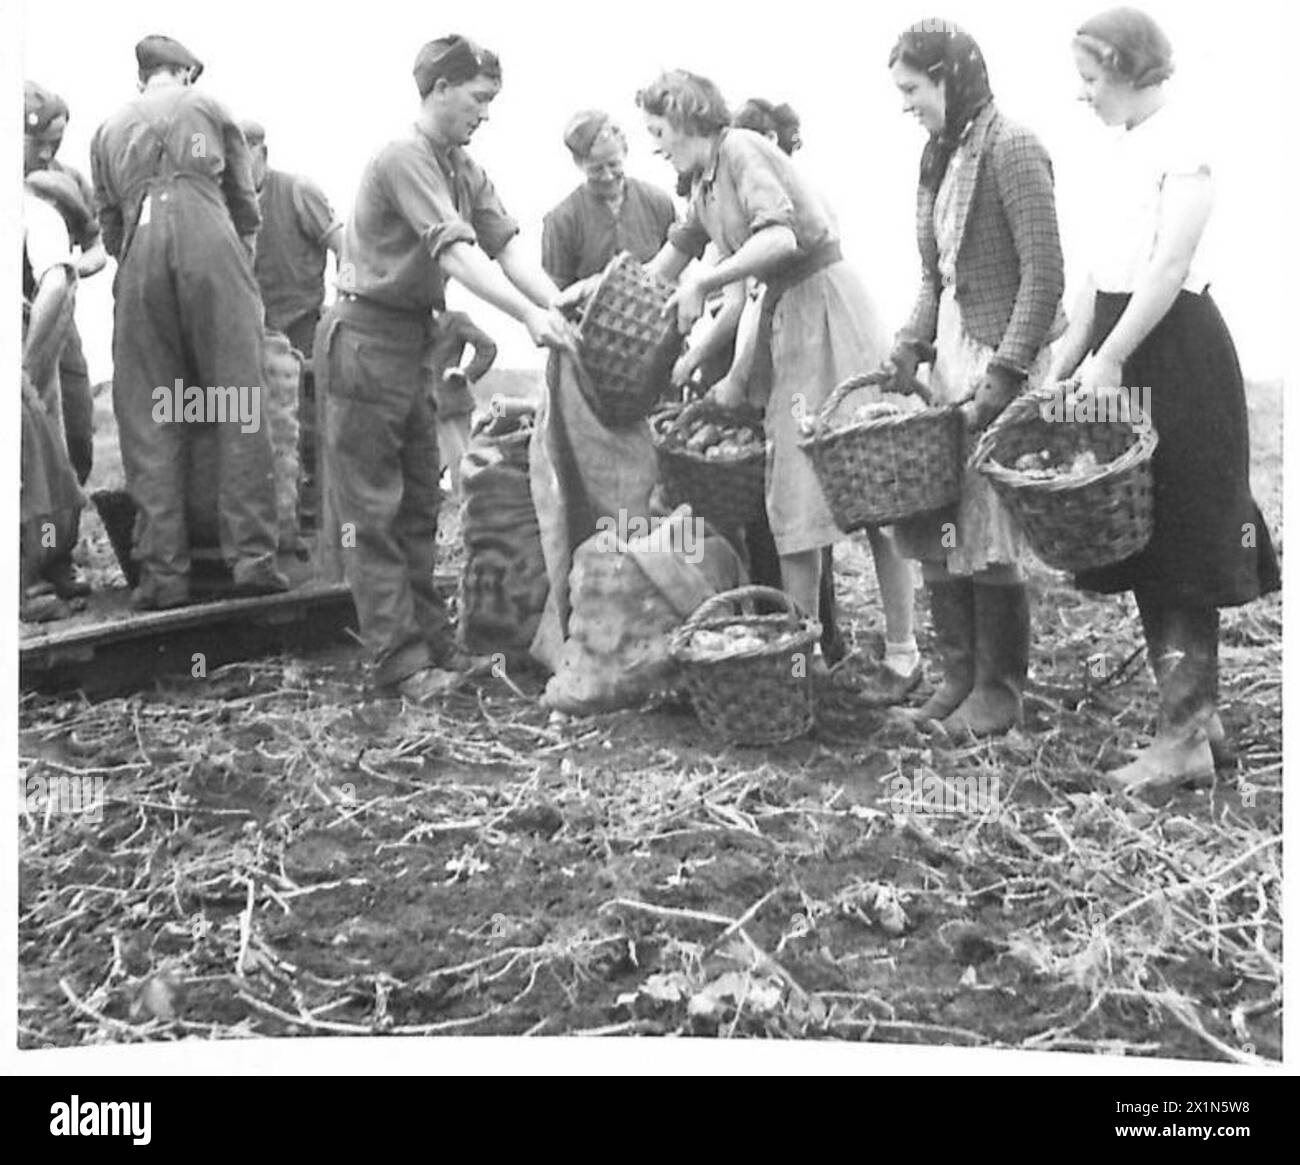 "TOMMY" AIUTA I RACCOGLITORI: Soldati, ragazze e contadini lavorano insieme, riempiendo sacchi di patate e pesandole, nei campi, nell'esercito britannico Foto Stock